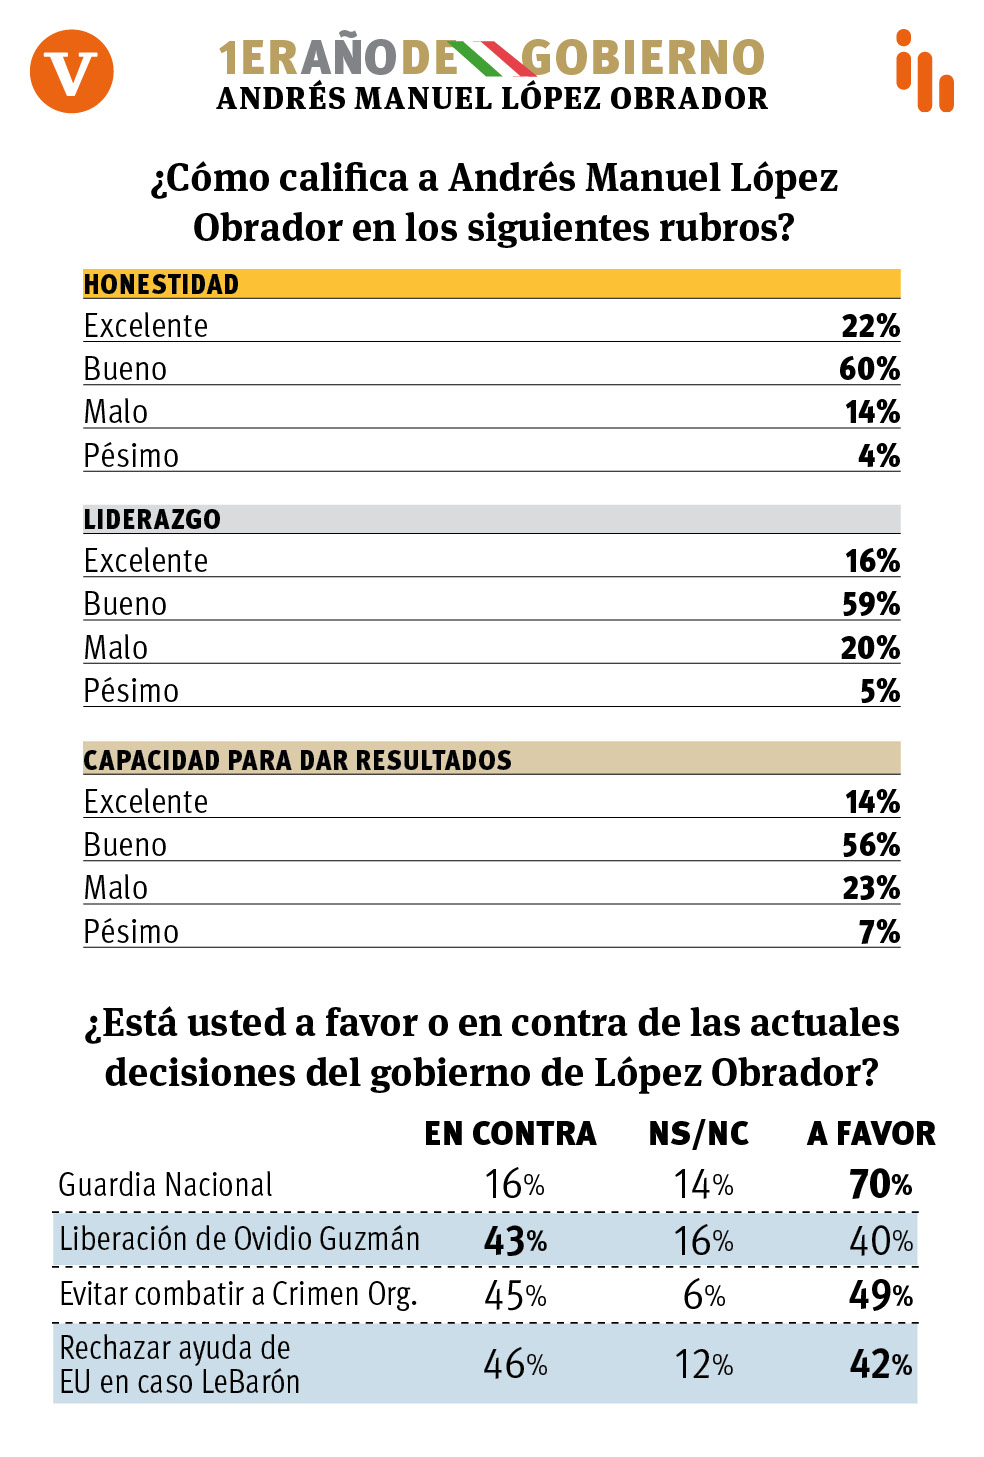 $!A un año, cae 9% aprobación de AMLO en Coahuila: encuesta de Vanguardia